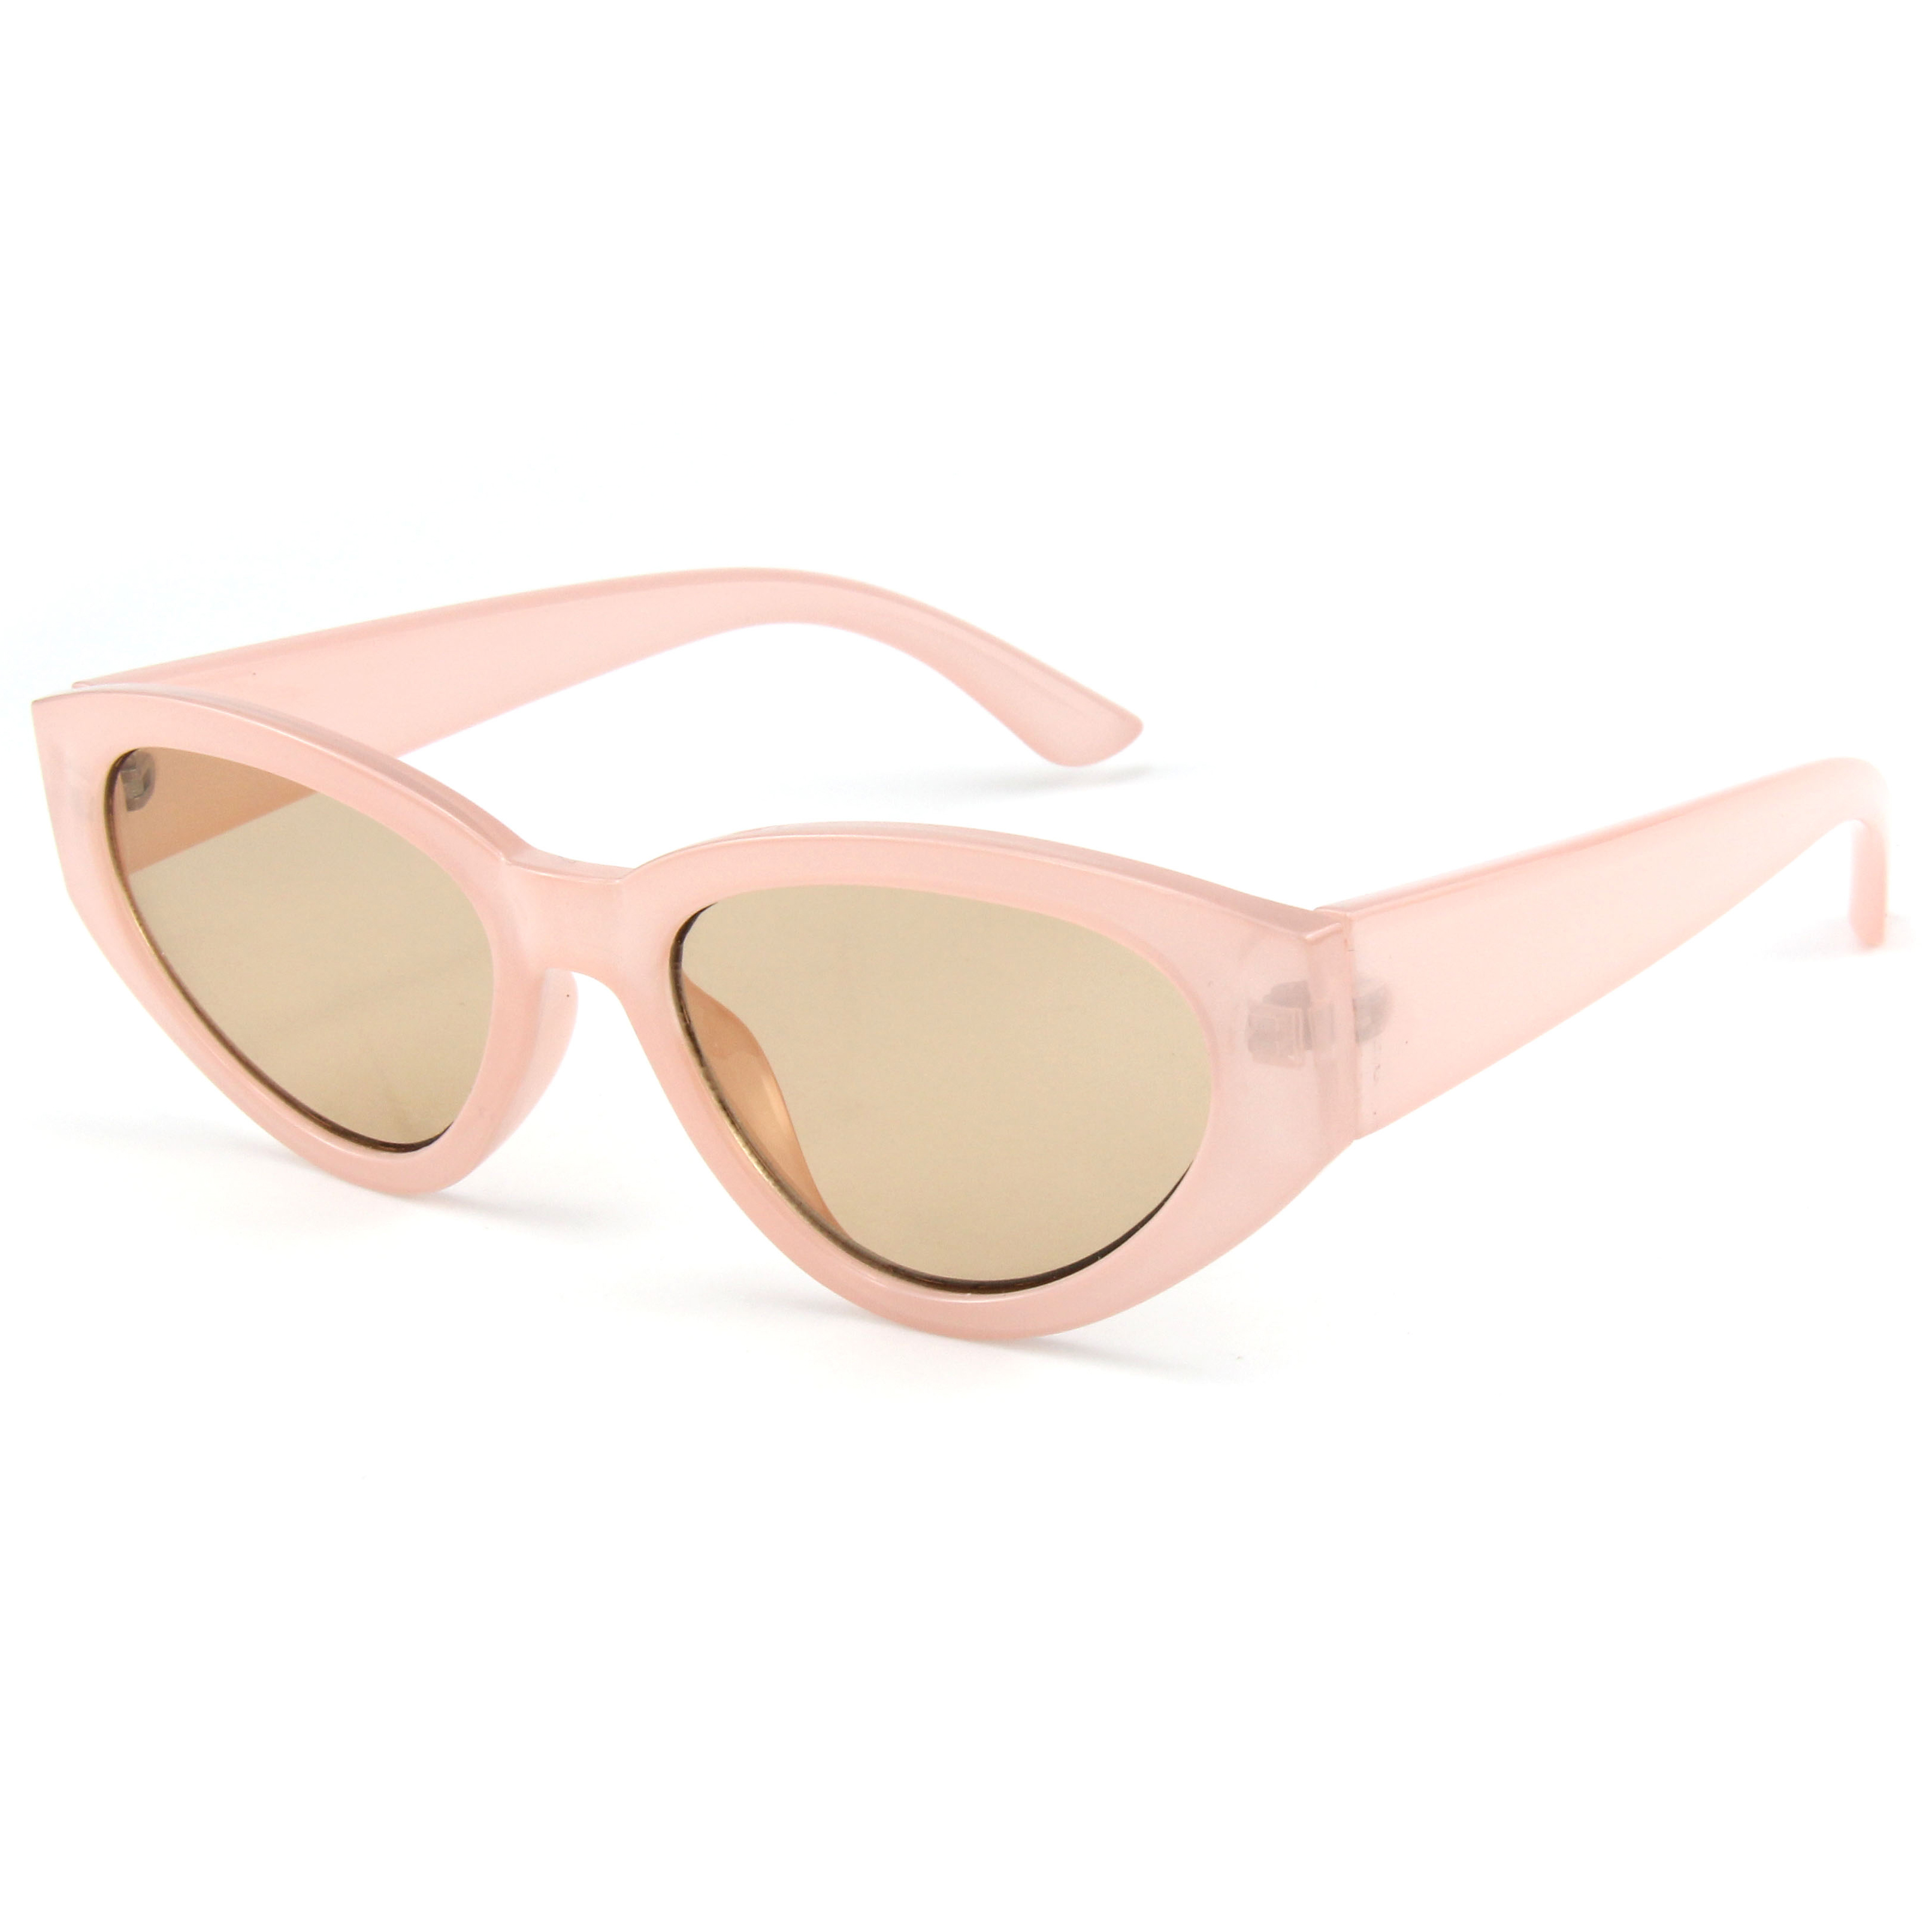 EugenialSiUtily Fashion Pequeño Marco completo Luna Rhinestones Gafas de sol Mujeres Diamante Vintage Sunglasses 2021